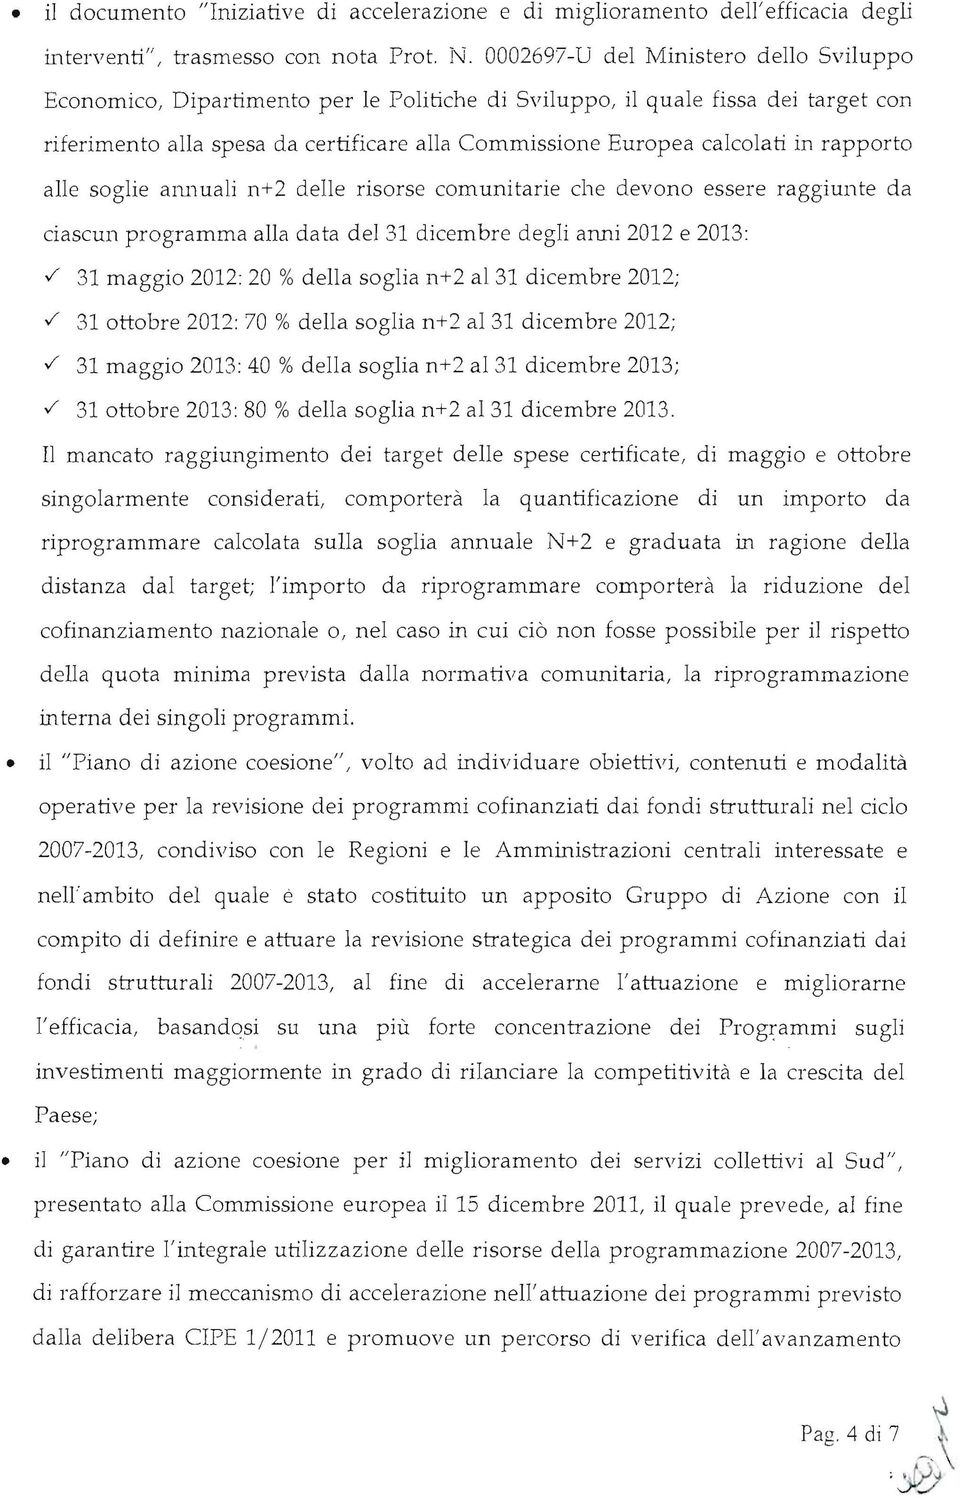 rapporto alle soglie ammali n+2 delle risorse comunitarie che devono essere raggiunte da ciascun programma alla data del 31 dicembre degli anni 2012 e 2013:.